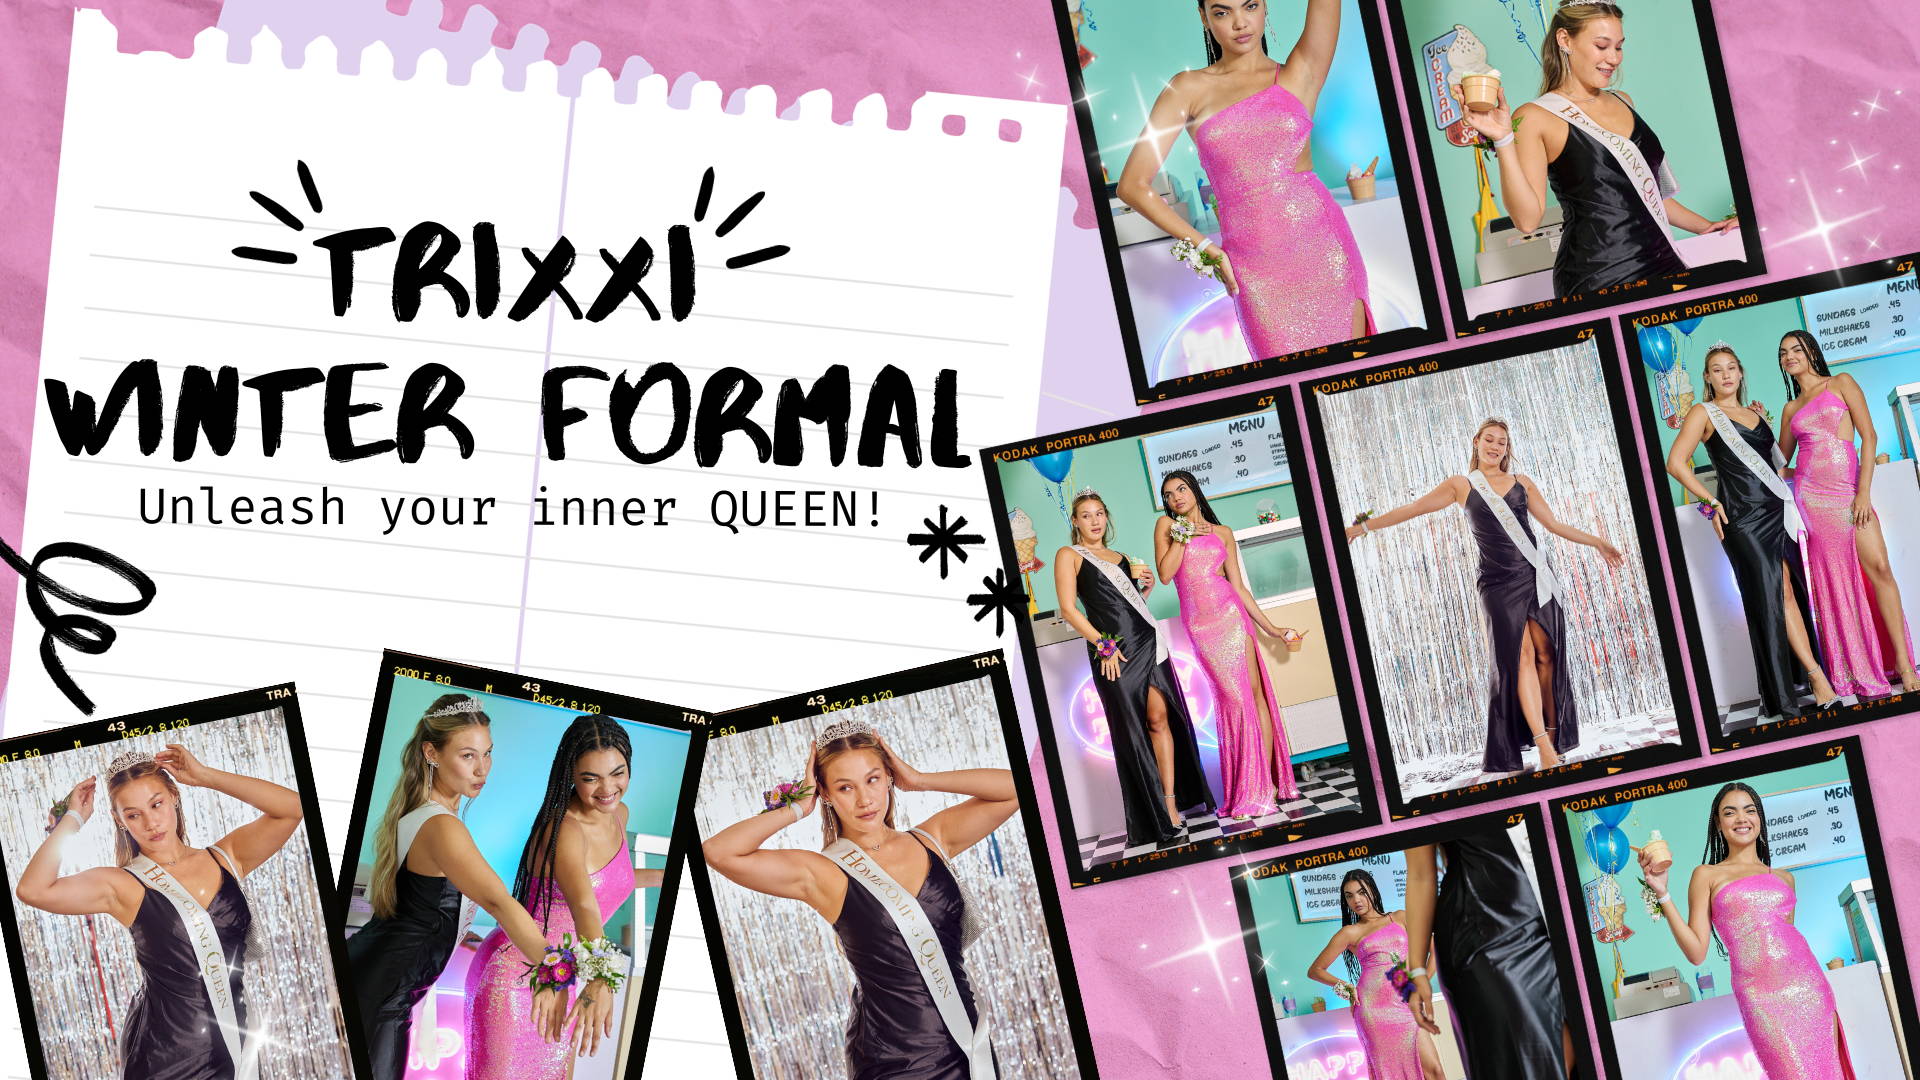 Trrixxi Winter formal lookbook link, unleash your inner queen.